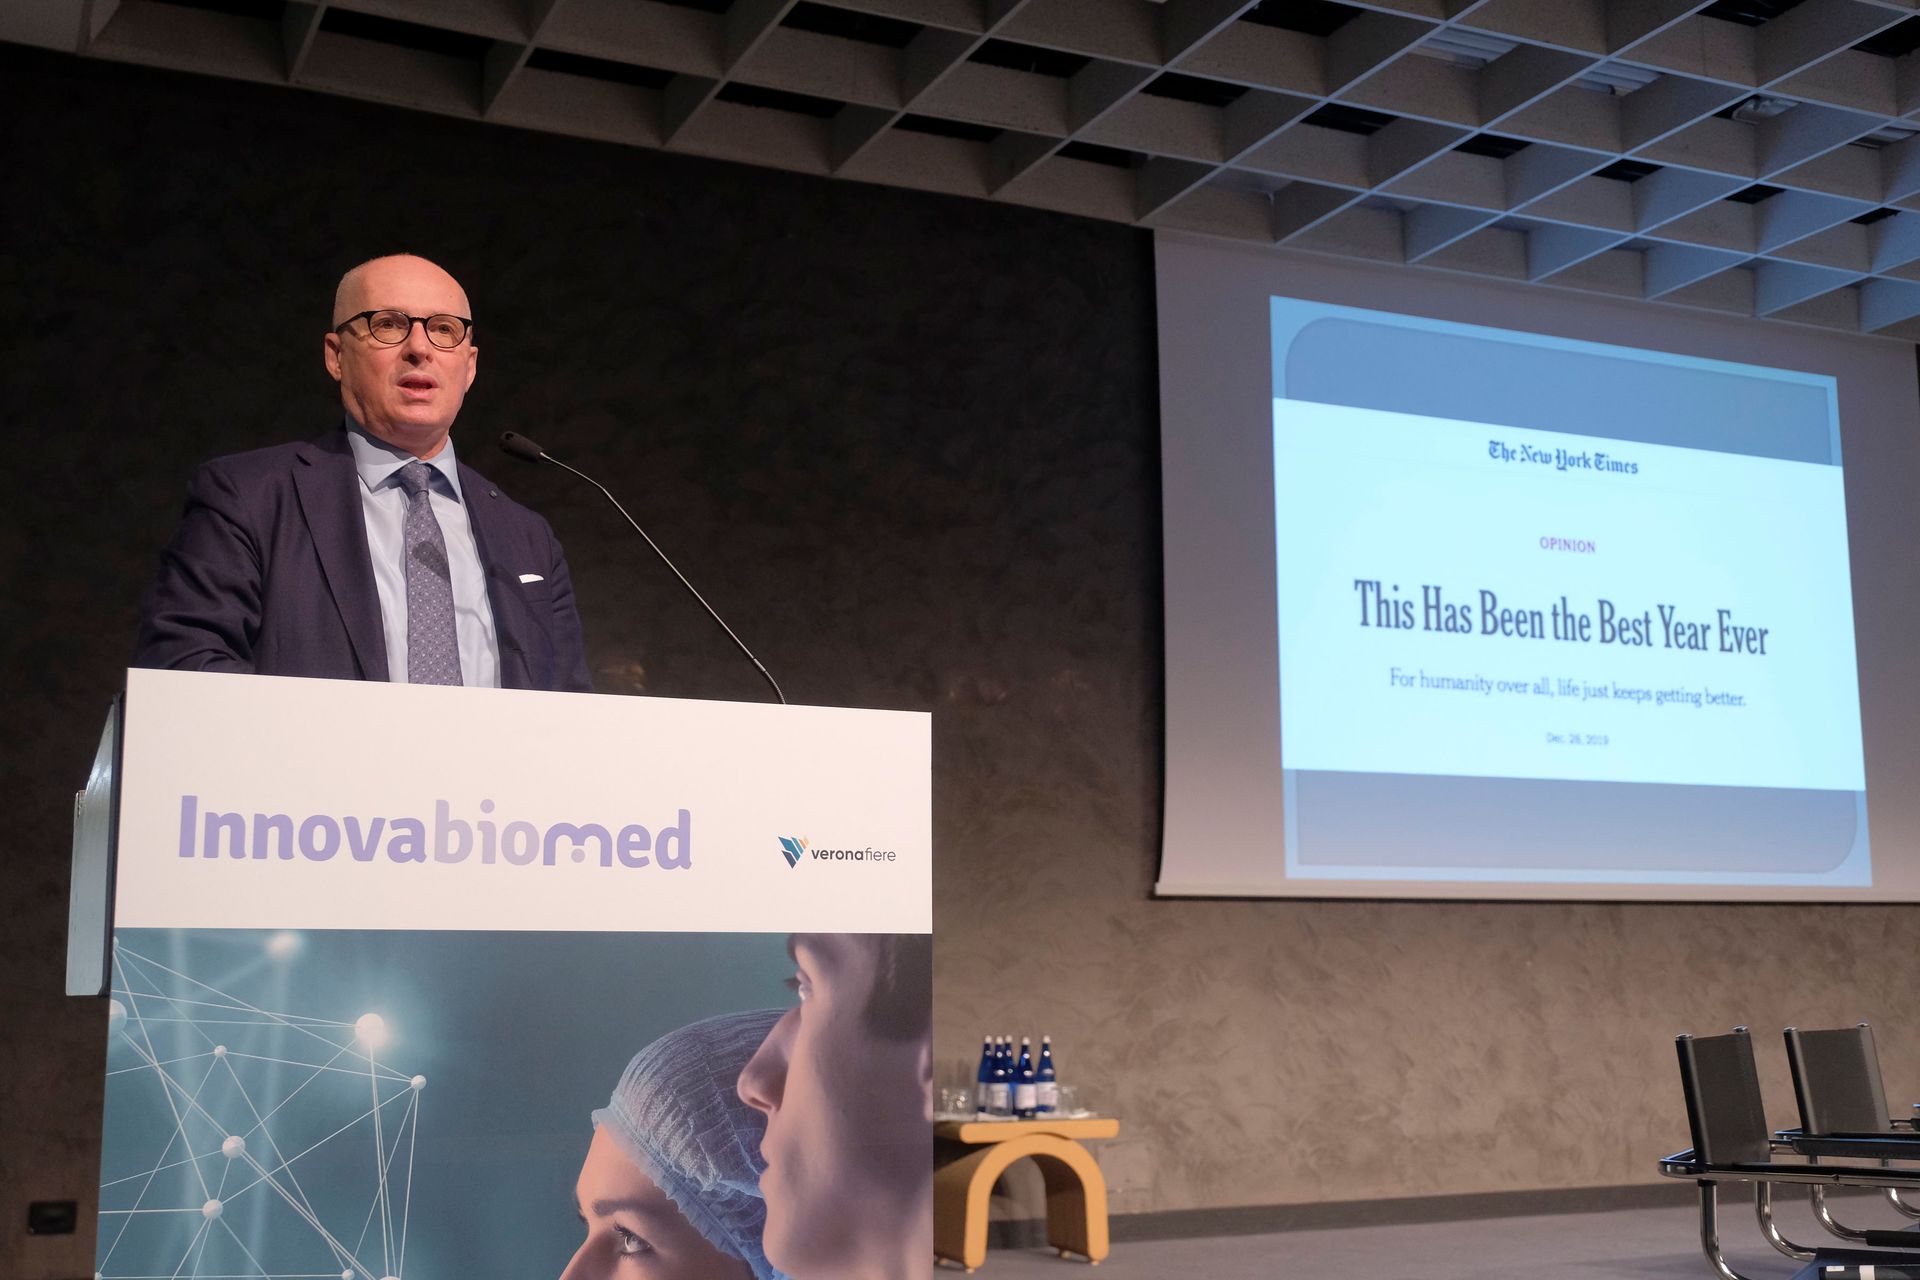 Walter Ricciardi all'inaugurazione del network e formation place "Innovabiomed" al Palaexpo di Verona il 24 maggio 2022